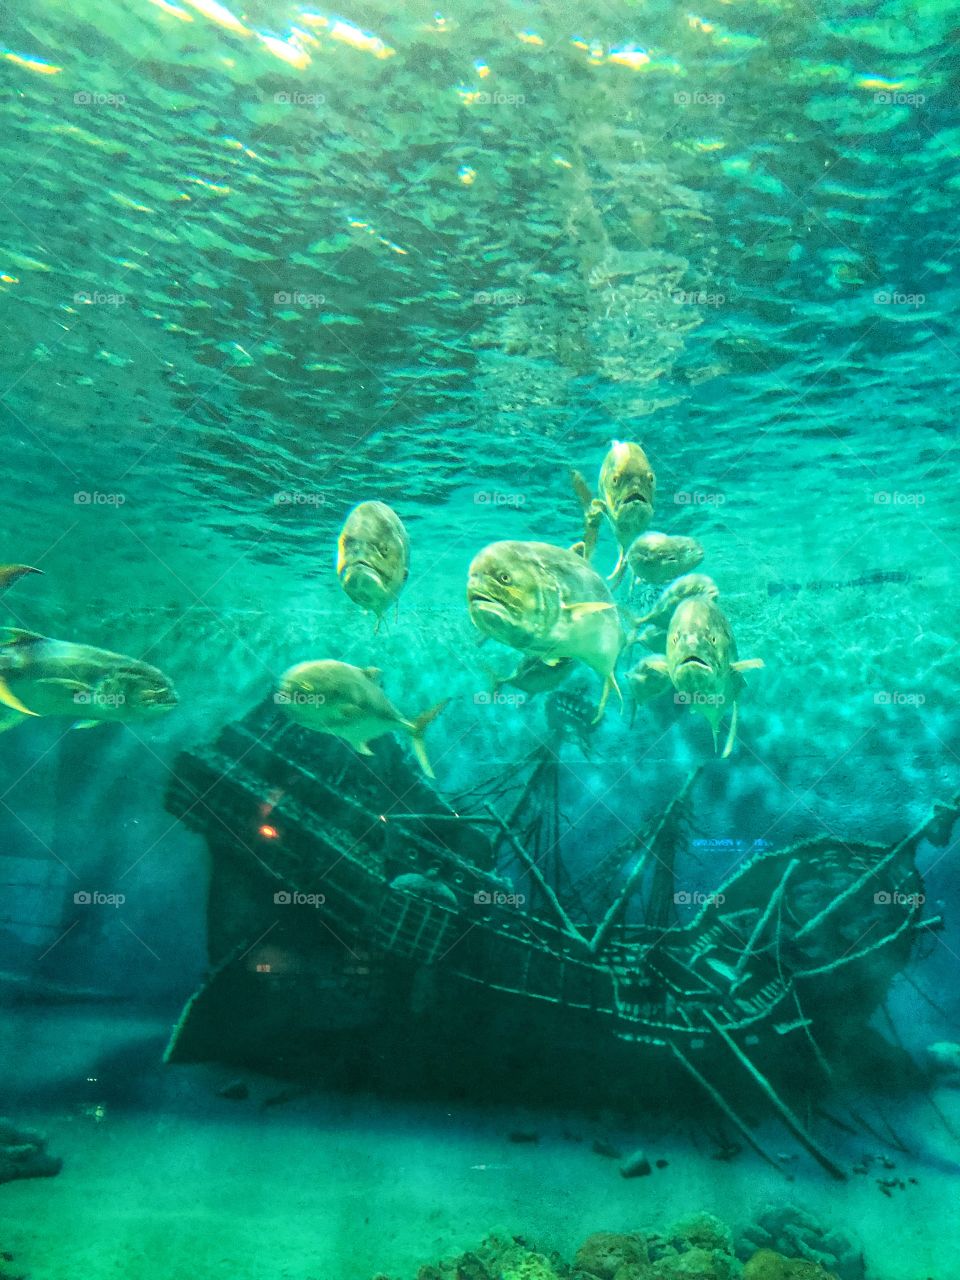 Fish in an aquarium 